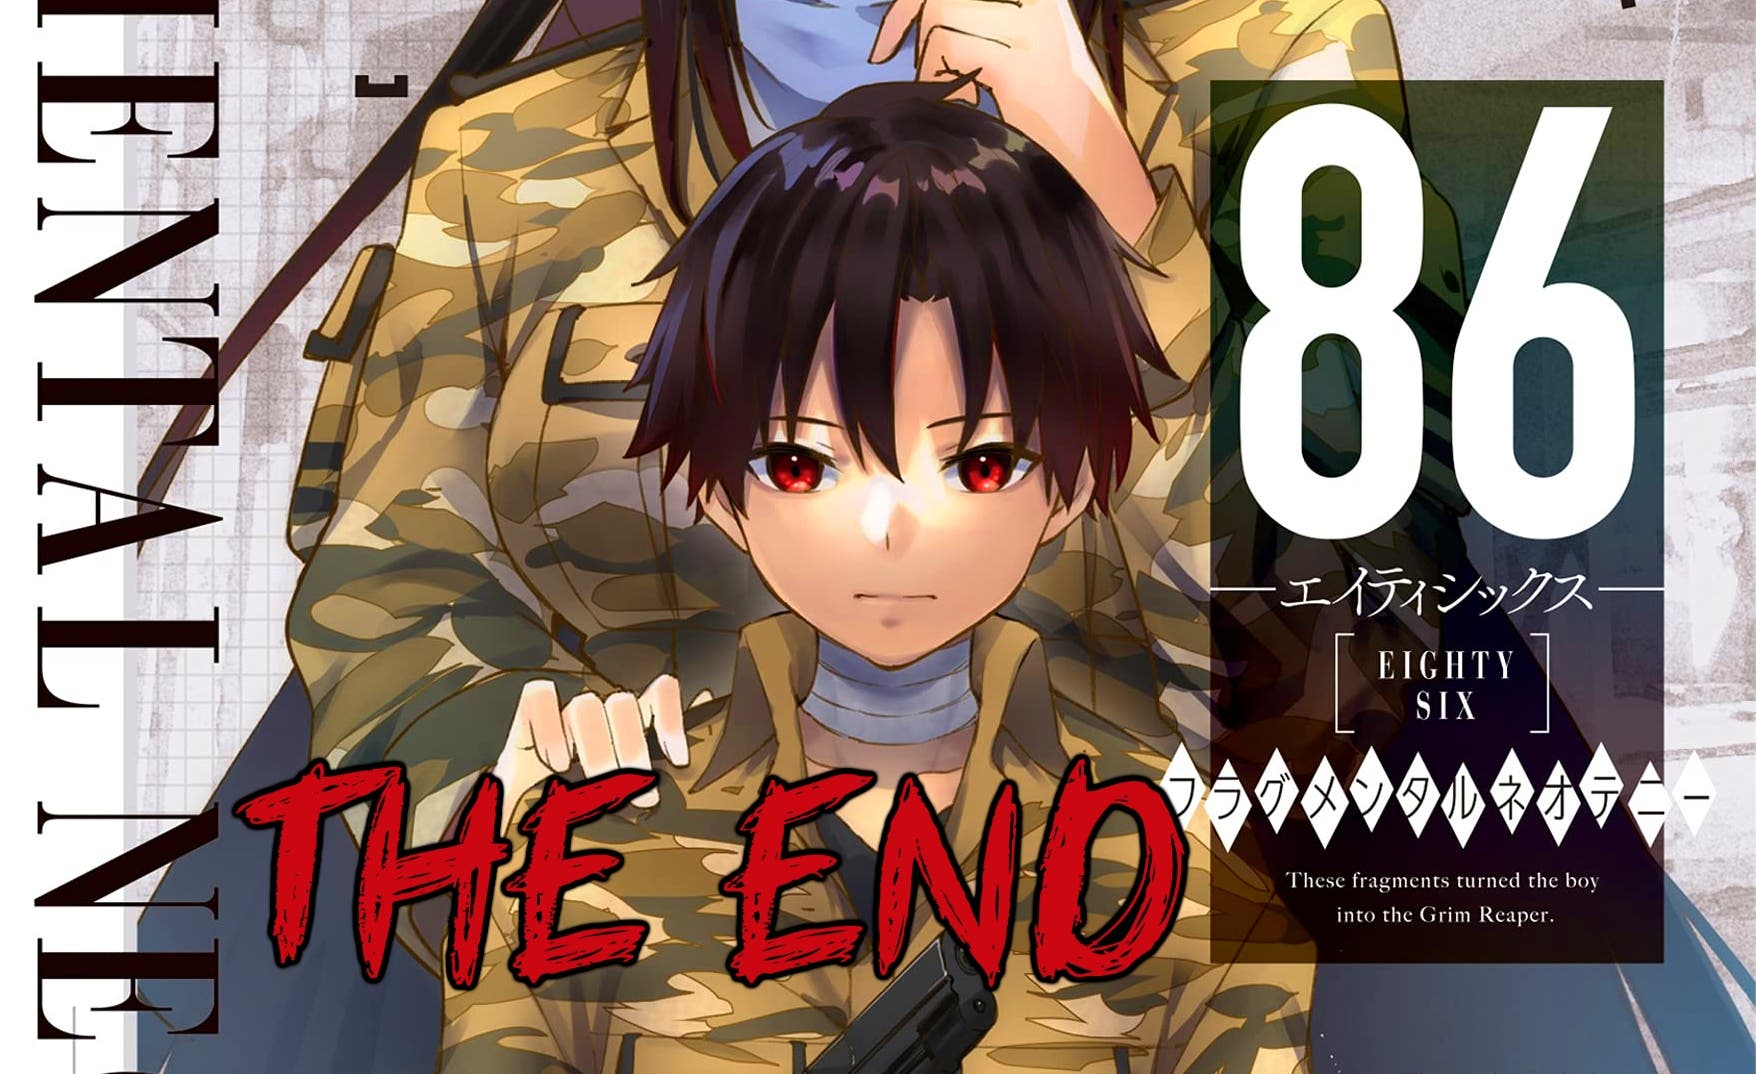 86: Fragmental Neoteny, el manga precuela de Eighty-Six, anuncia su final